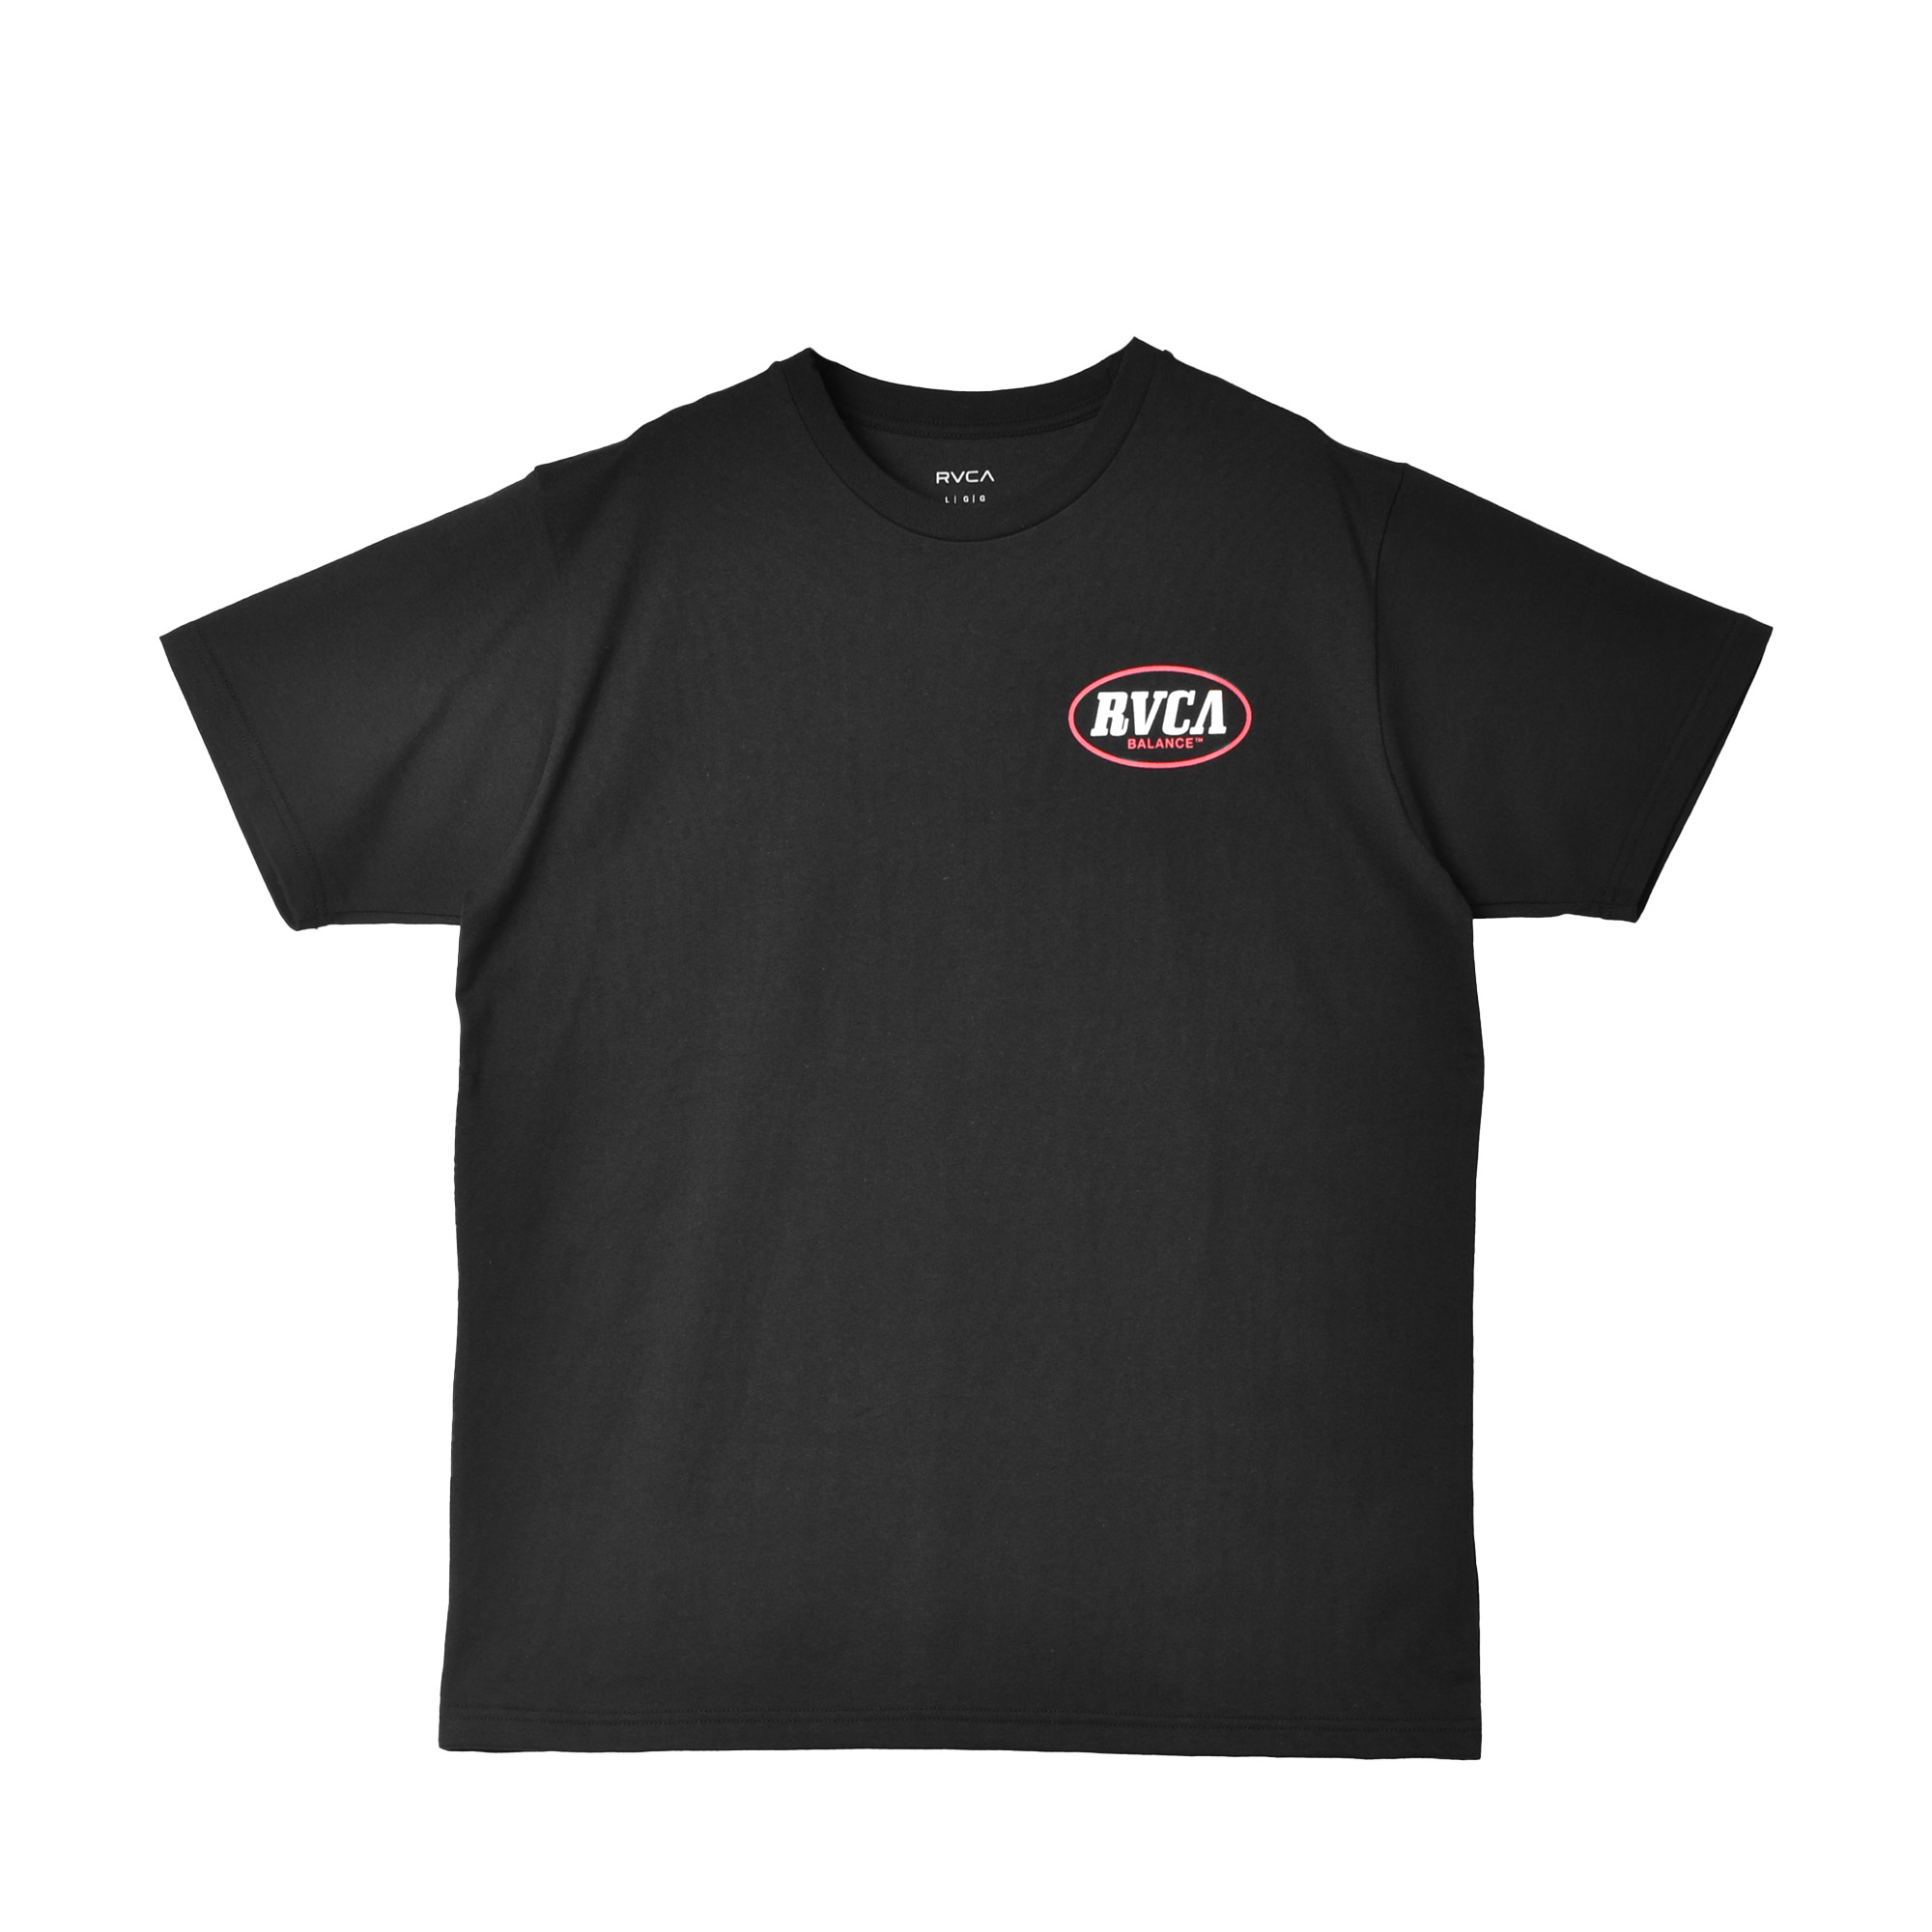 ルーカ 半袖Tシャツ メンズ BASECAMP TEE RVCA BE041233 ブラック 黒 ホ...